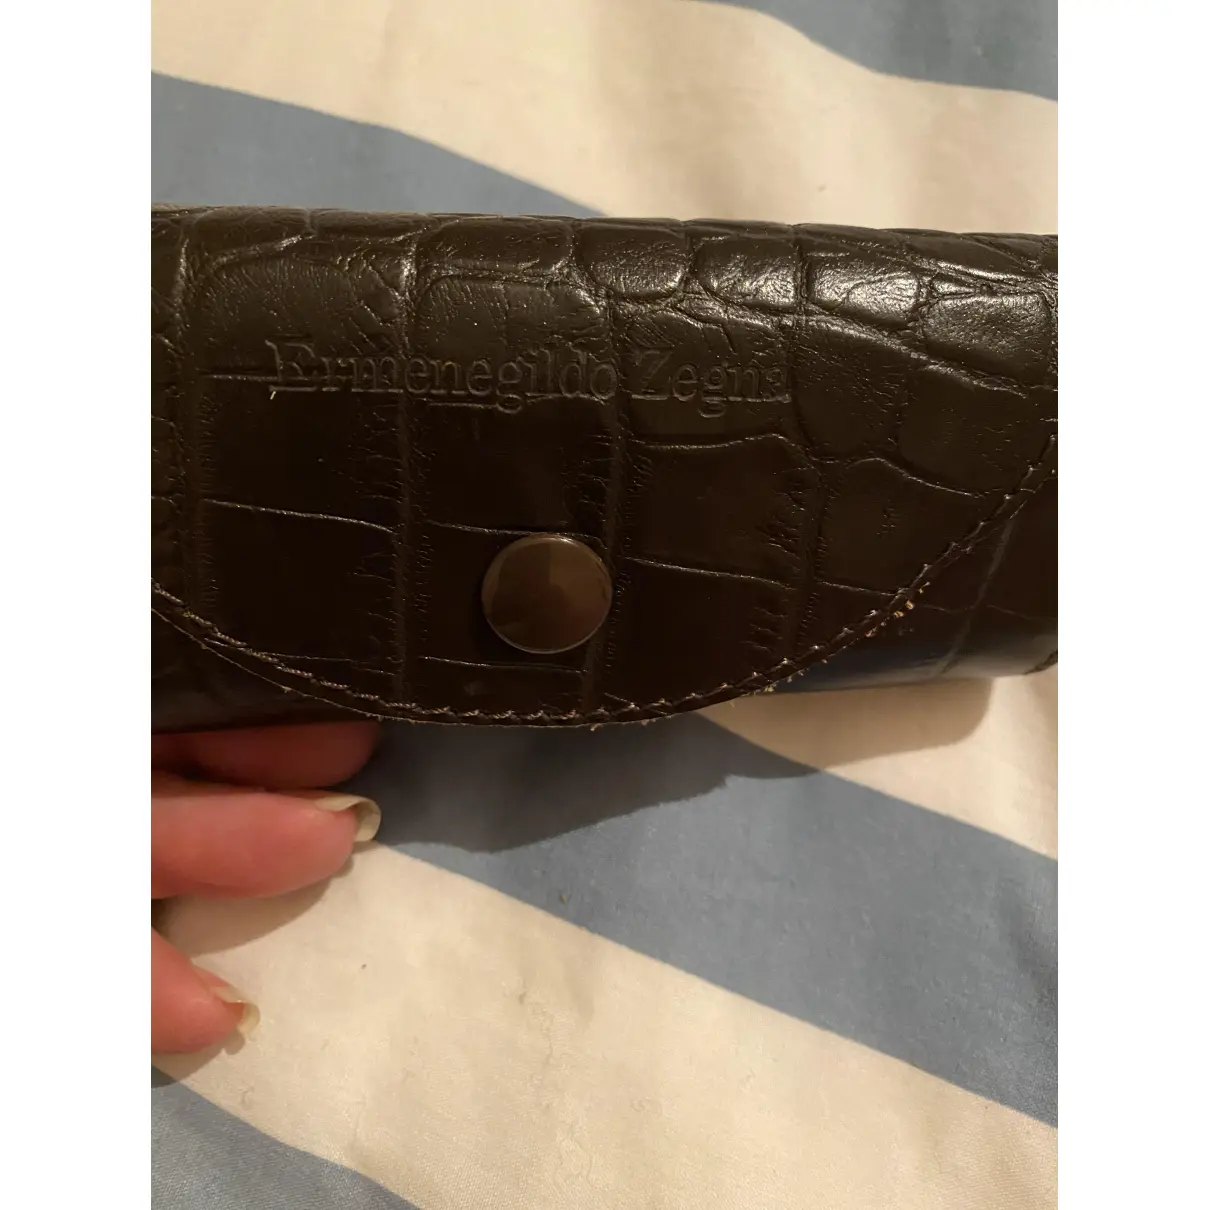 Buy Ermenegildo Zegna Leather small bag online